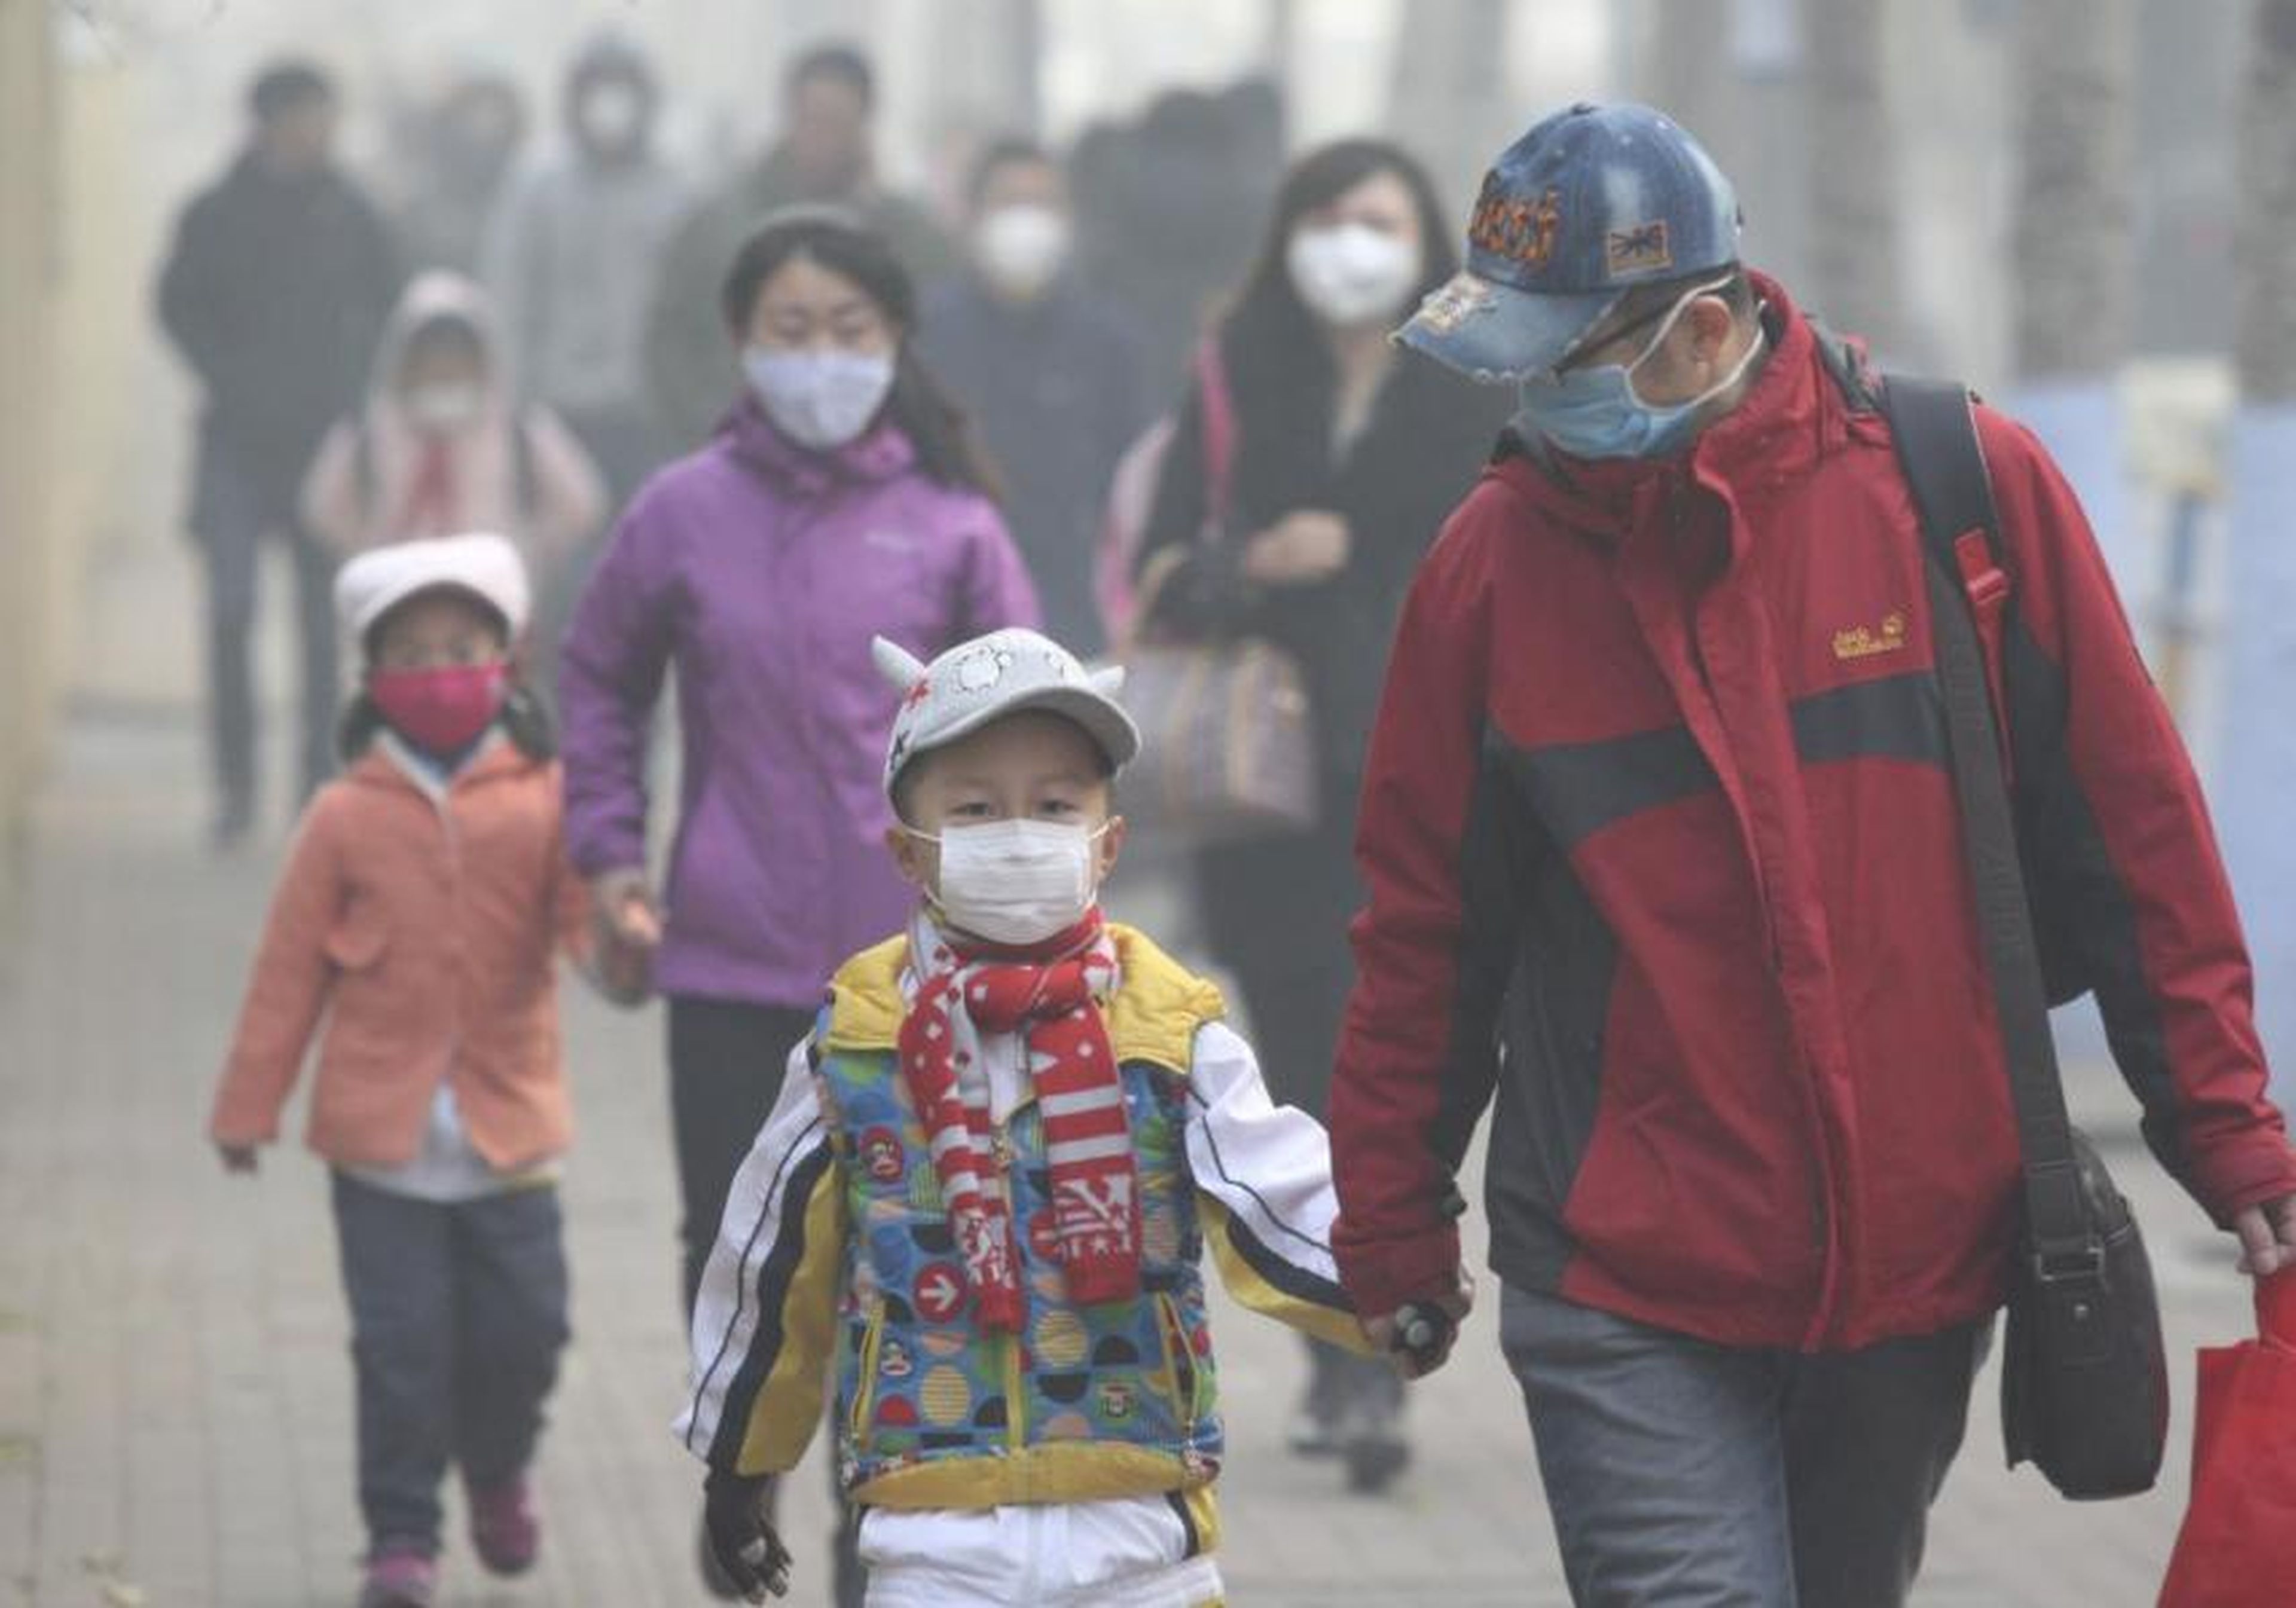 Jóvenes estudiantes y sus padres con máscaras caminan por una calle en un día nebuloso en Harbin, China, el 3 de noviembre de 2015.